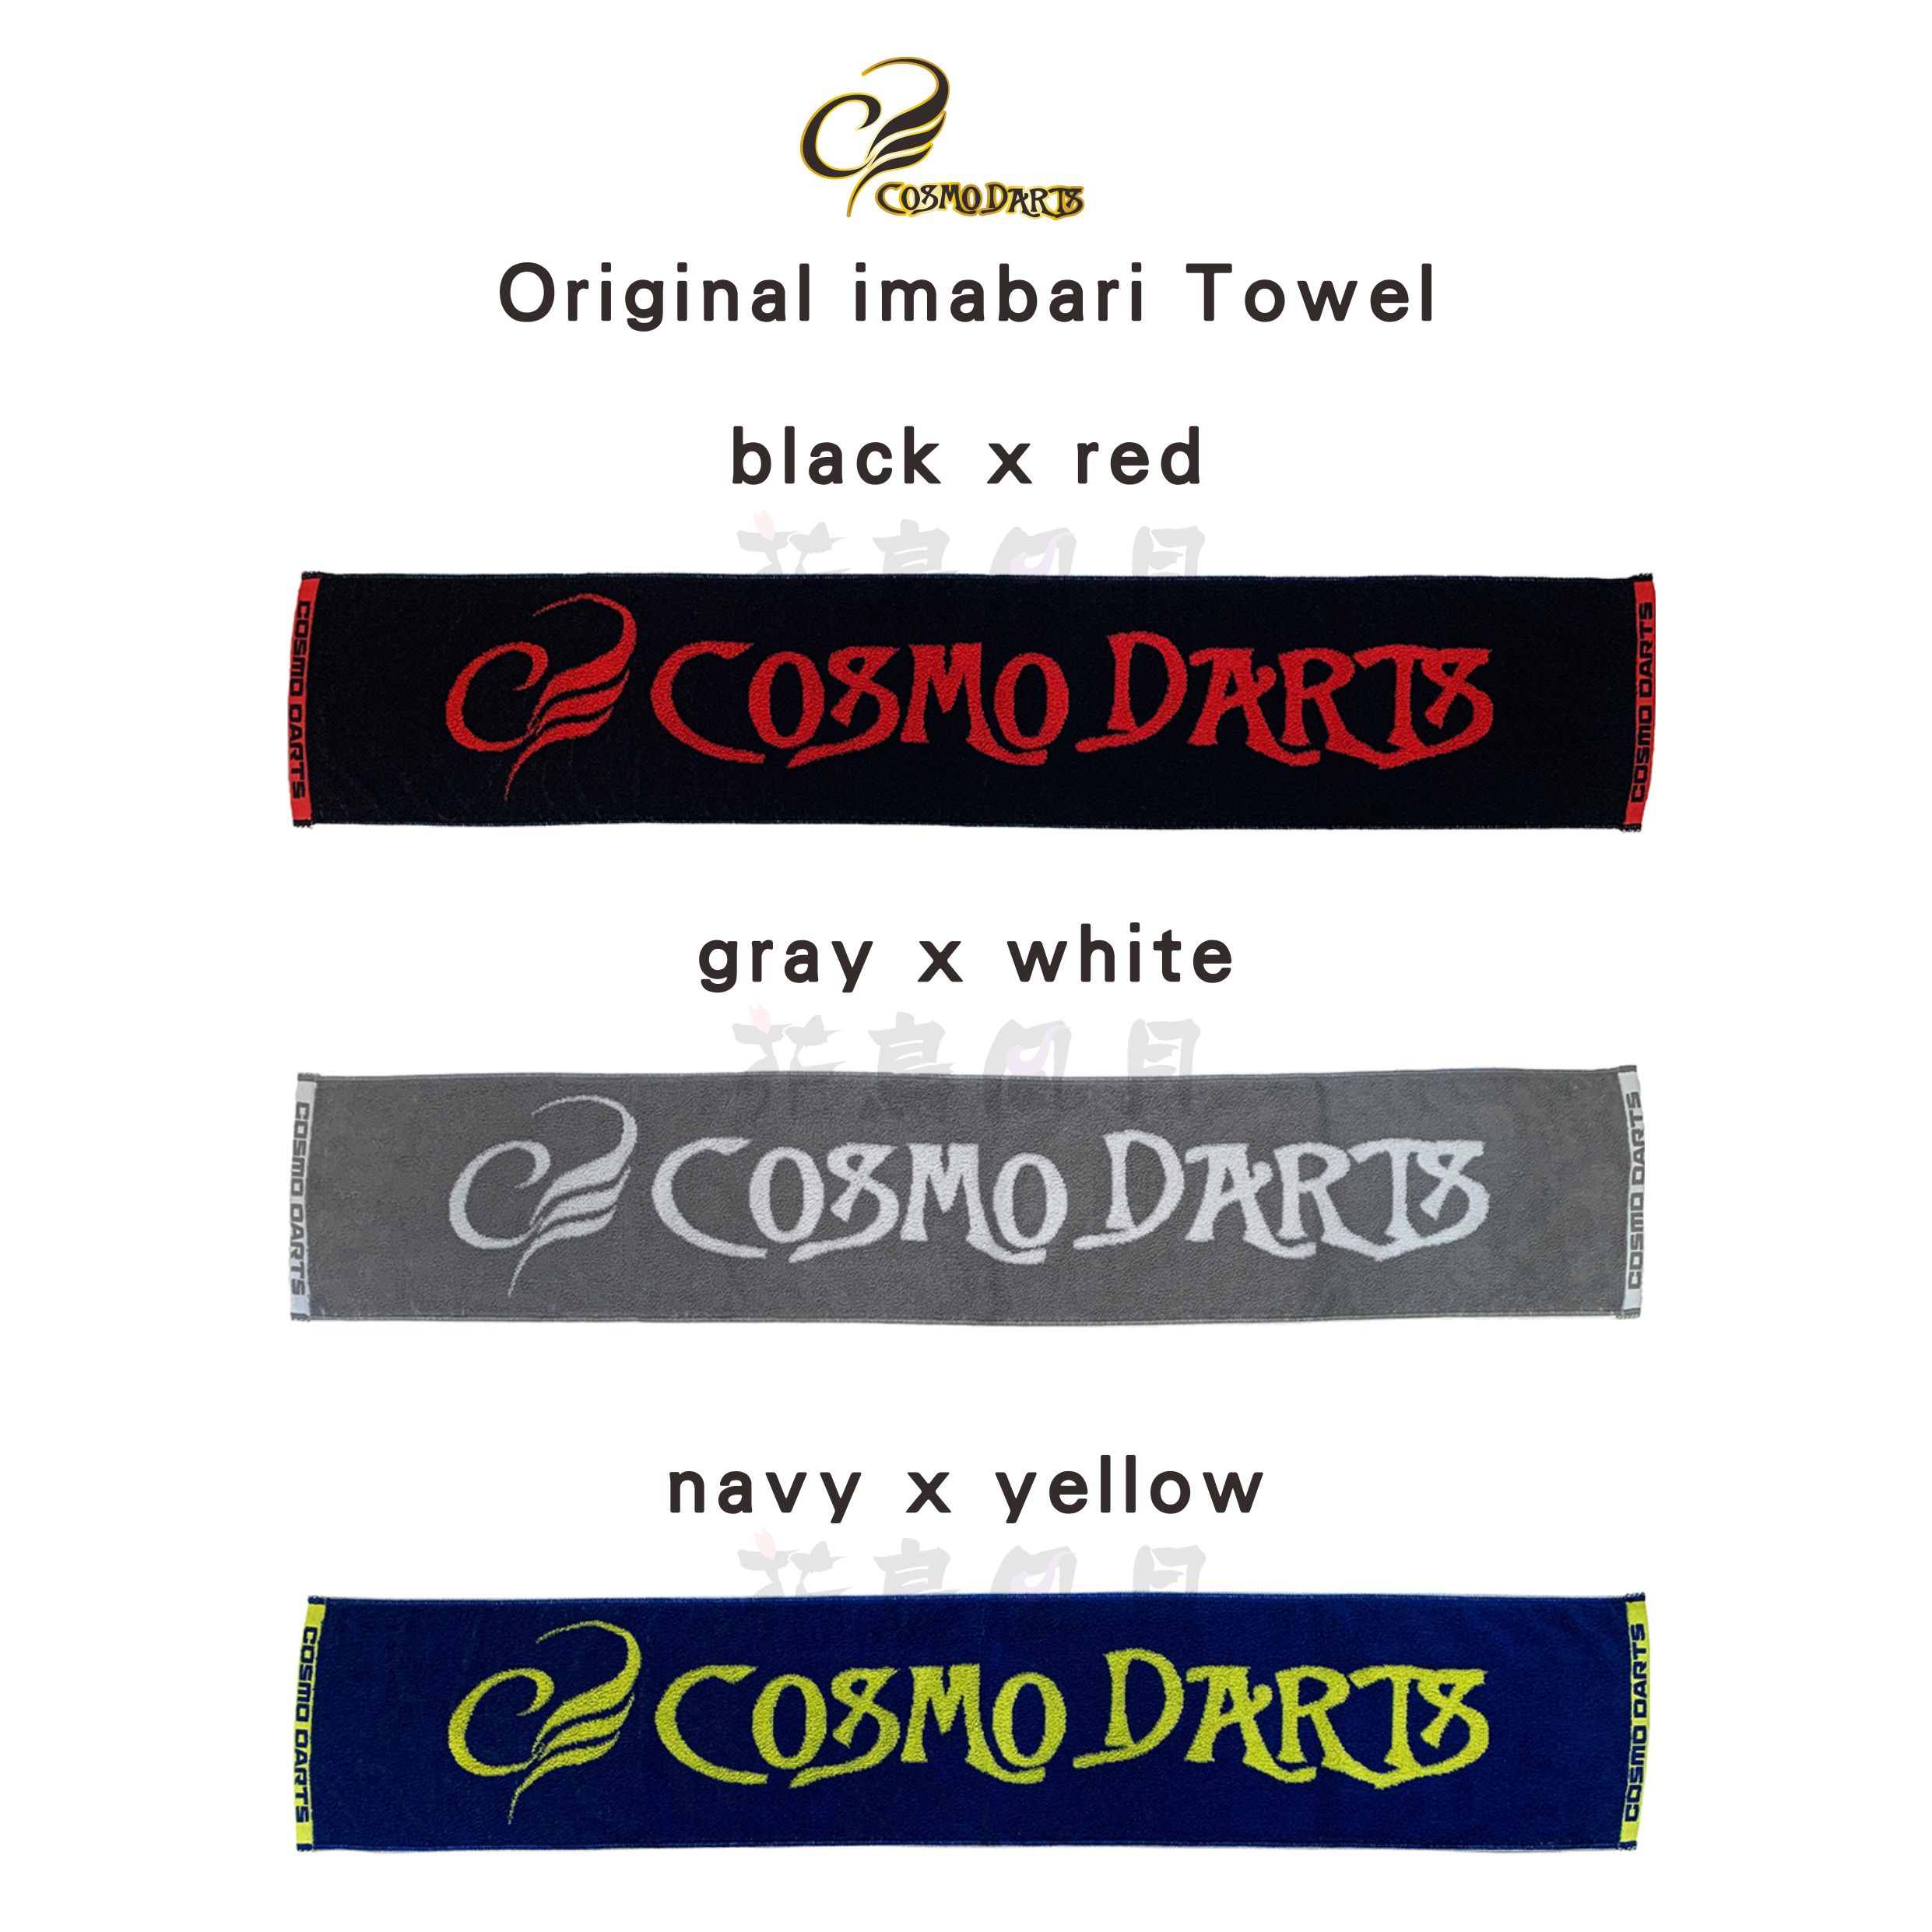 Original-imabari-Towel